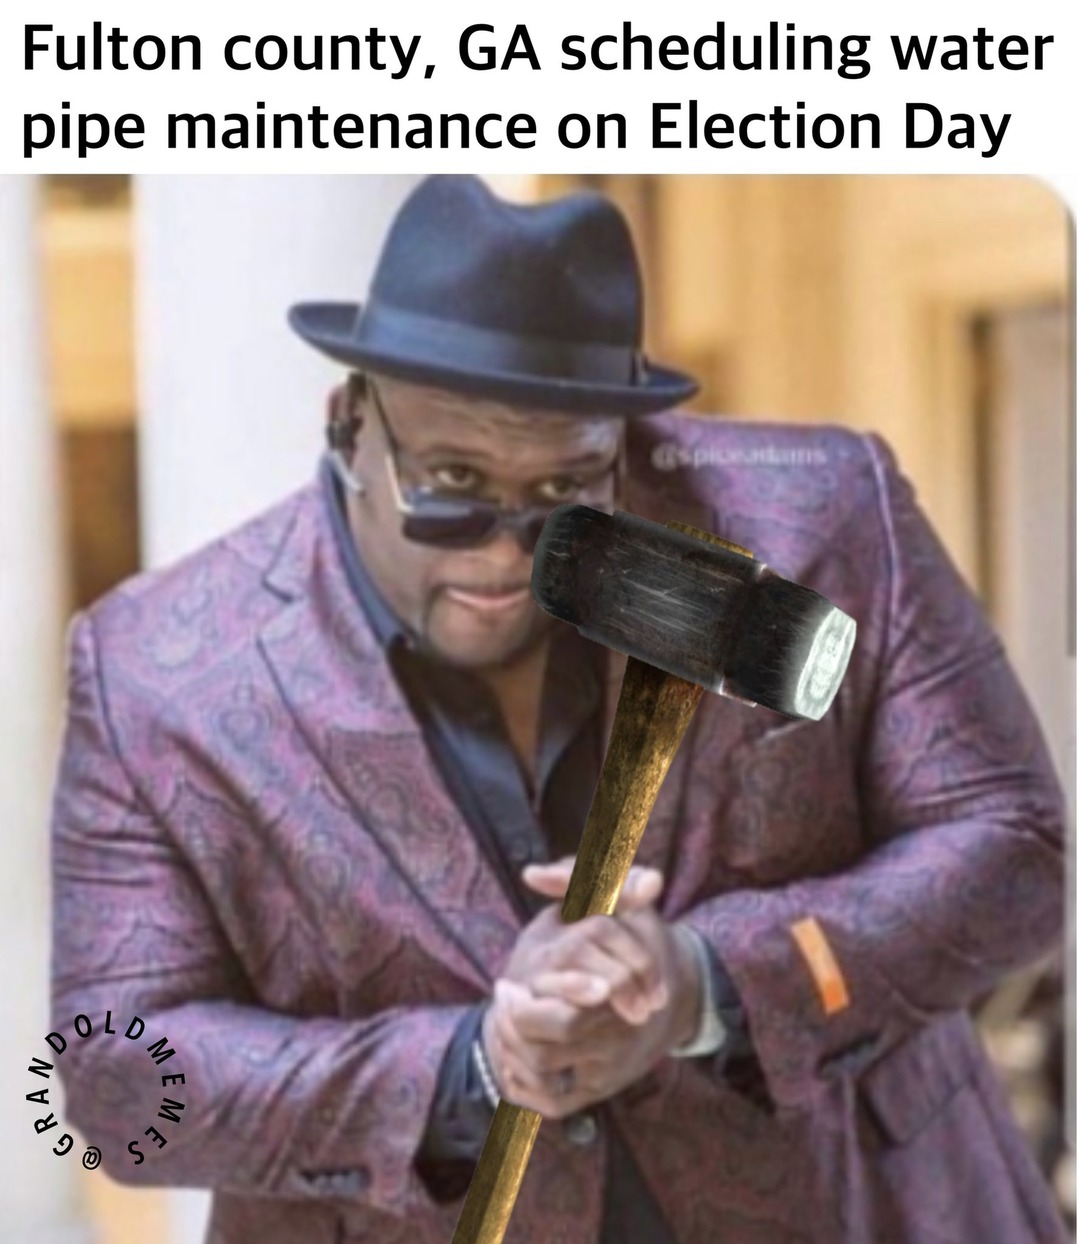 Water pipes go brrr - meme